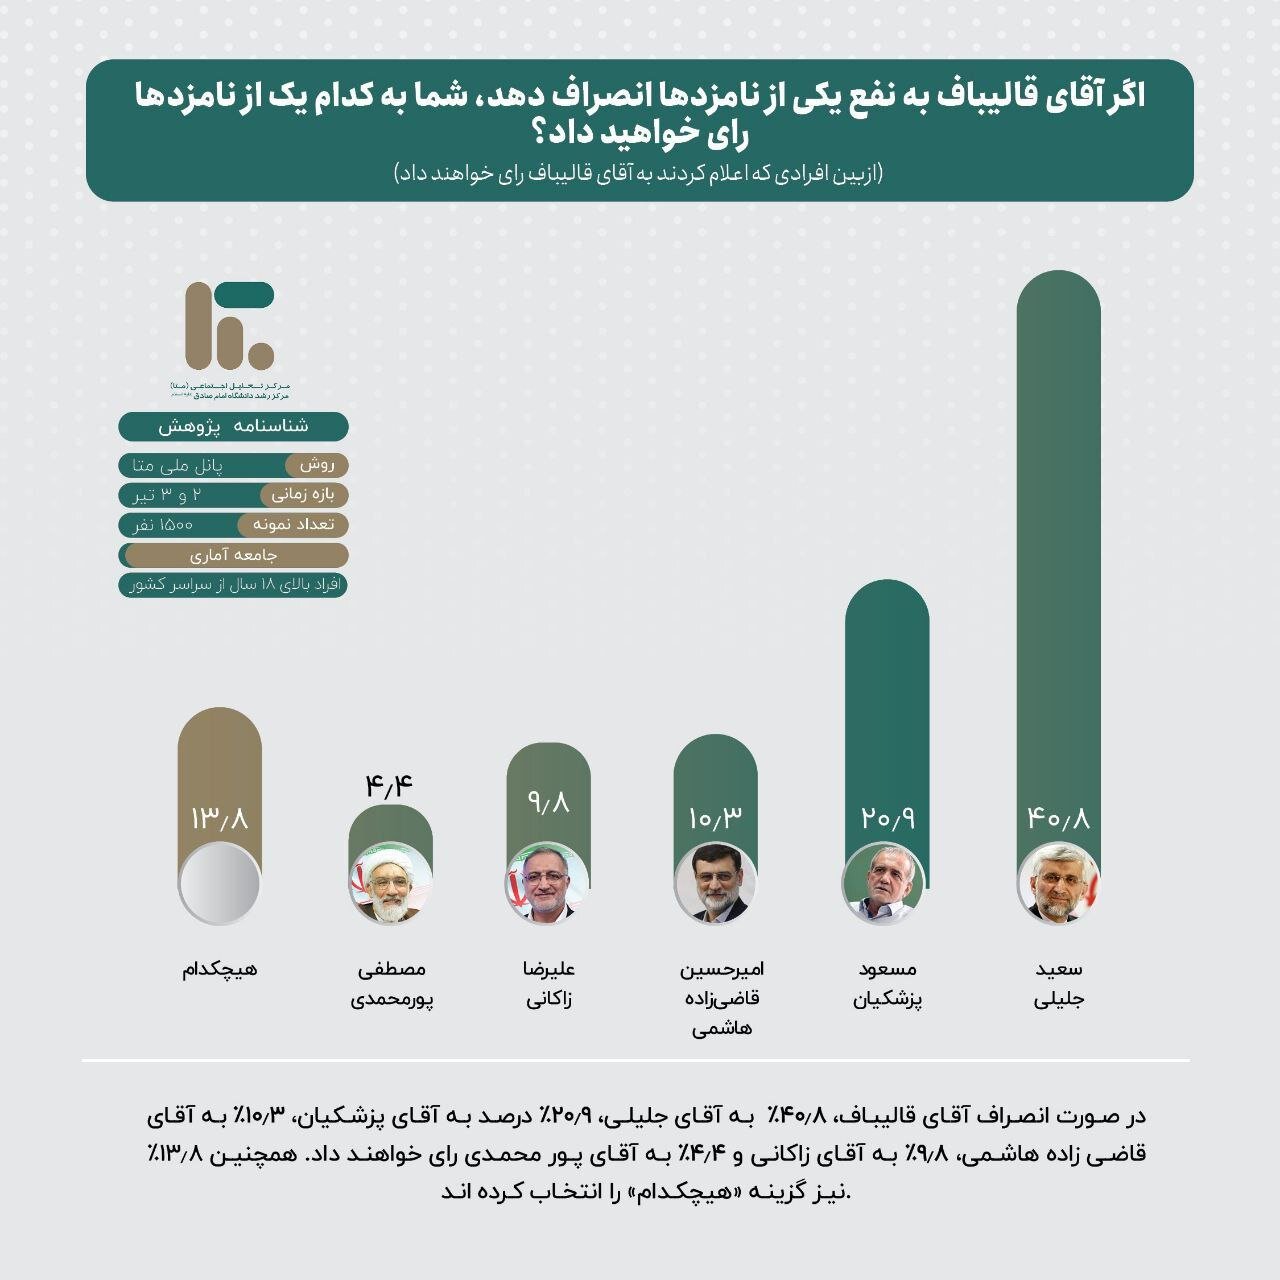 سهم نامزدهای انتخاباتی از سبد رأی یکدیگر چه میزان است؟ | تصاویر